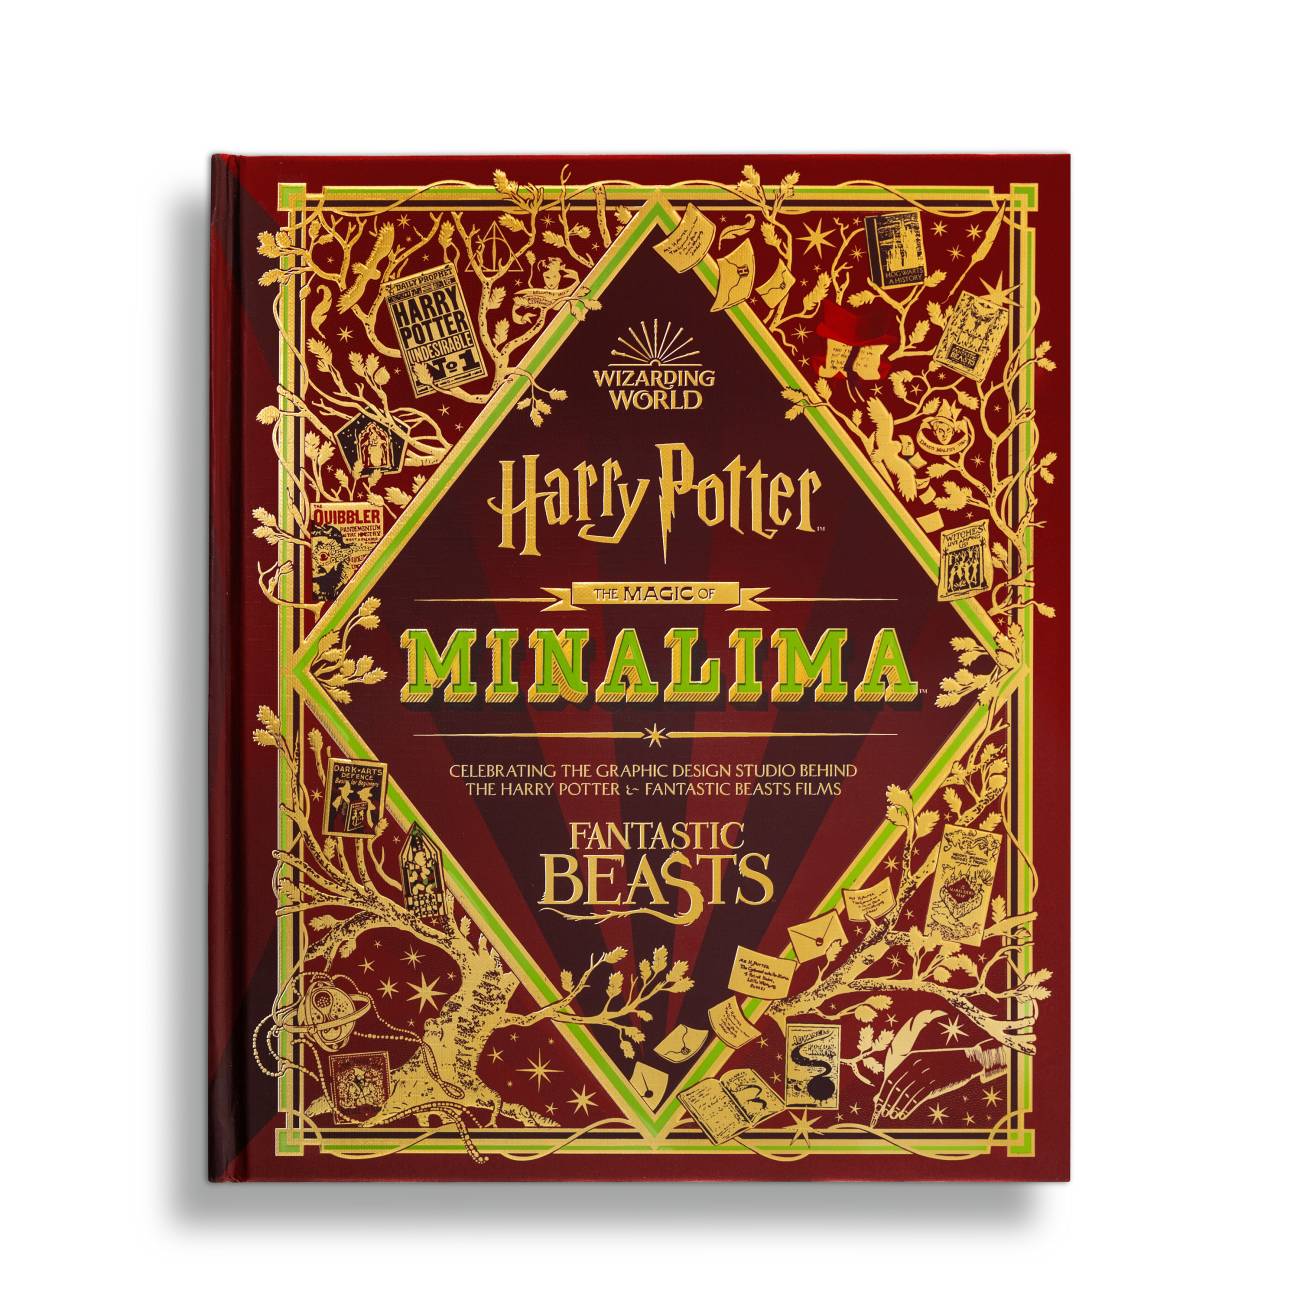 Harry Potter and the Prisoner of Azkaban - MinaLima